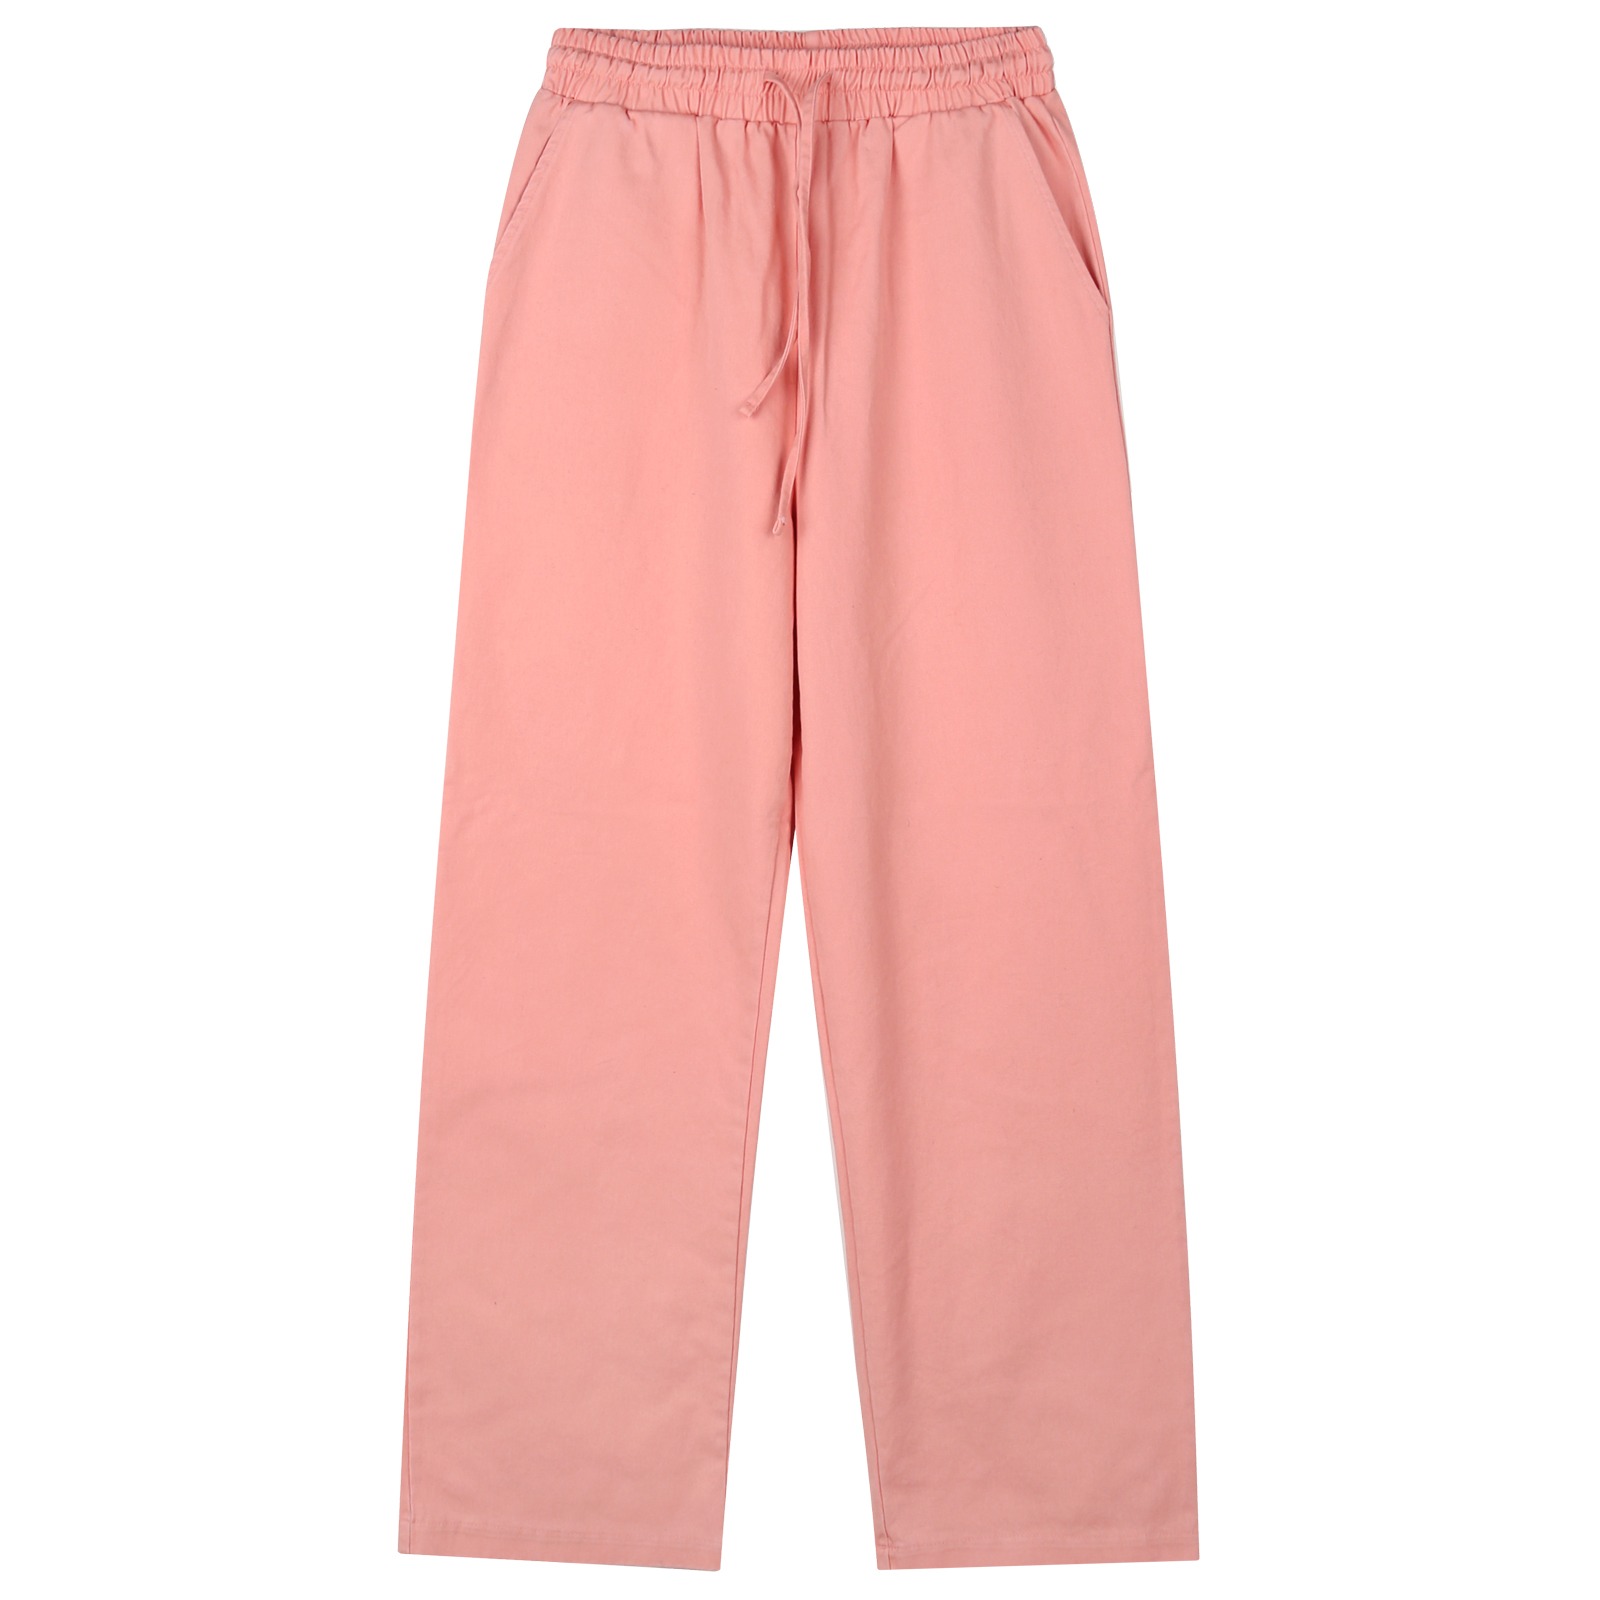 V149 wide cotton bandding pants (pink)